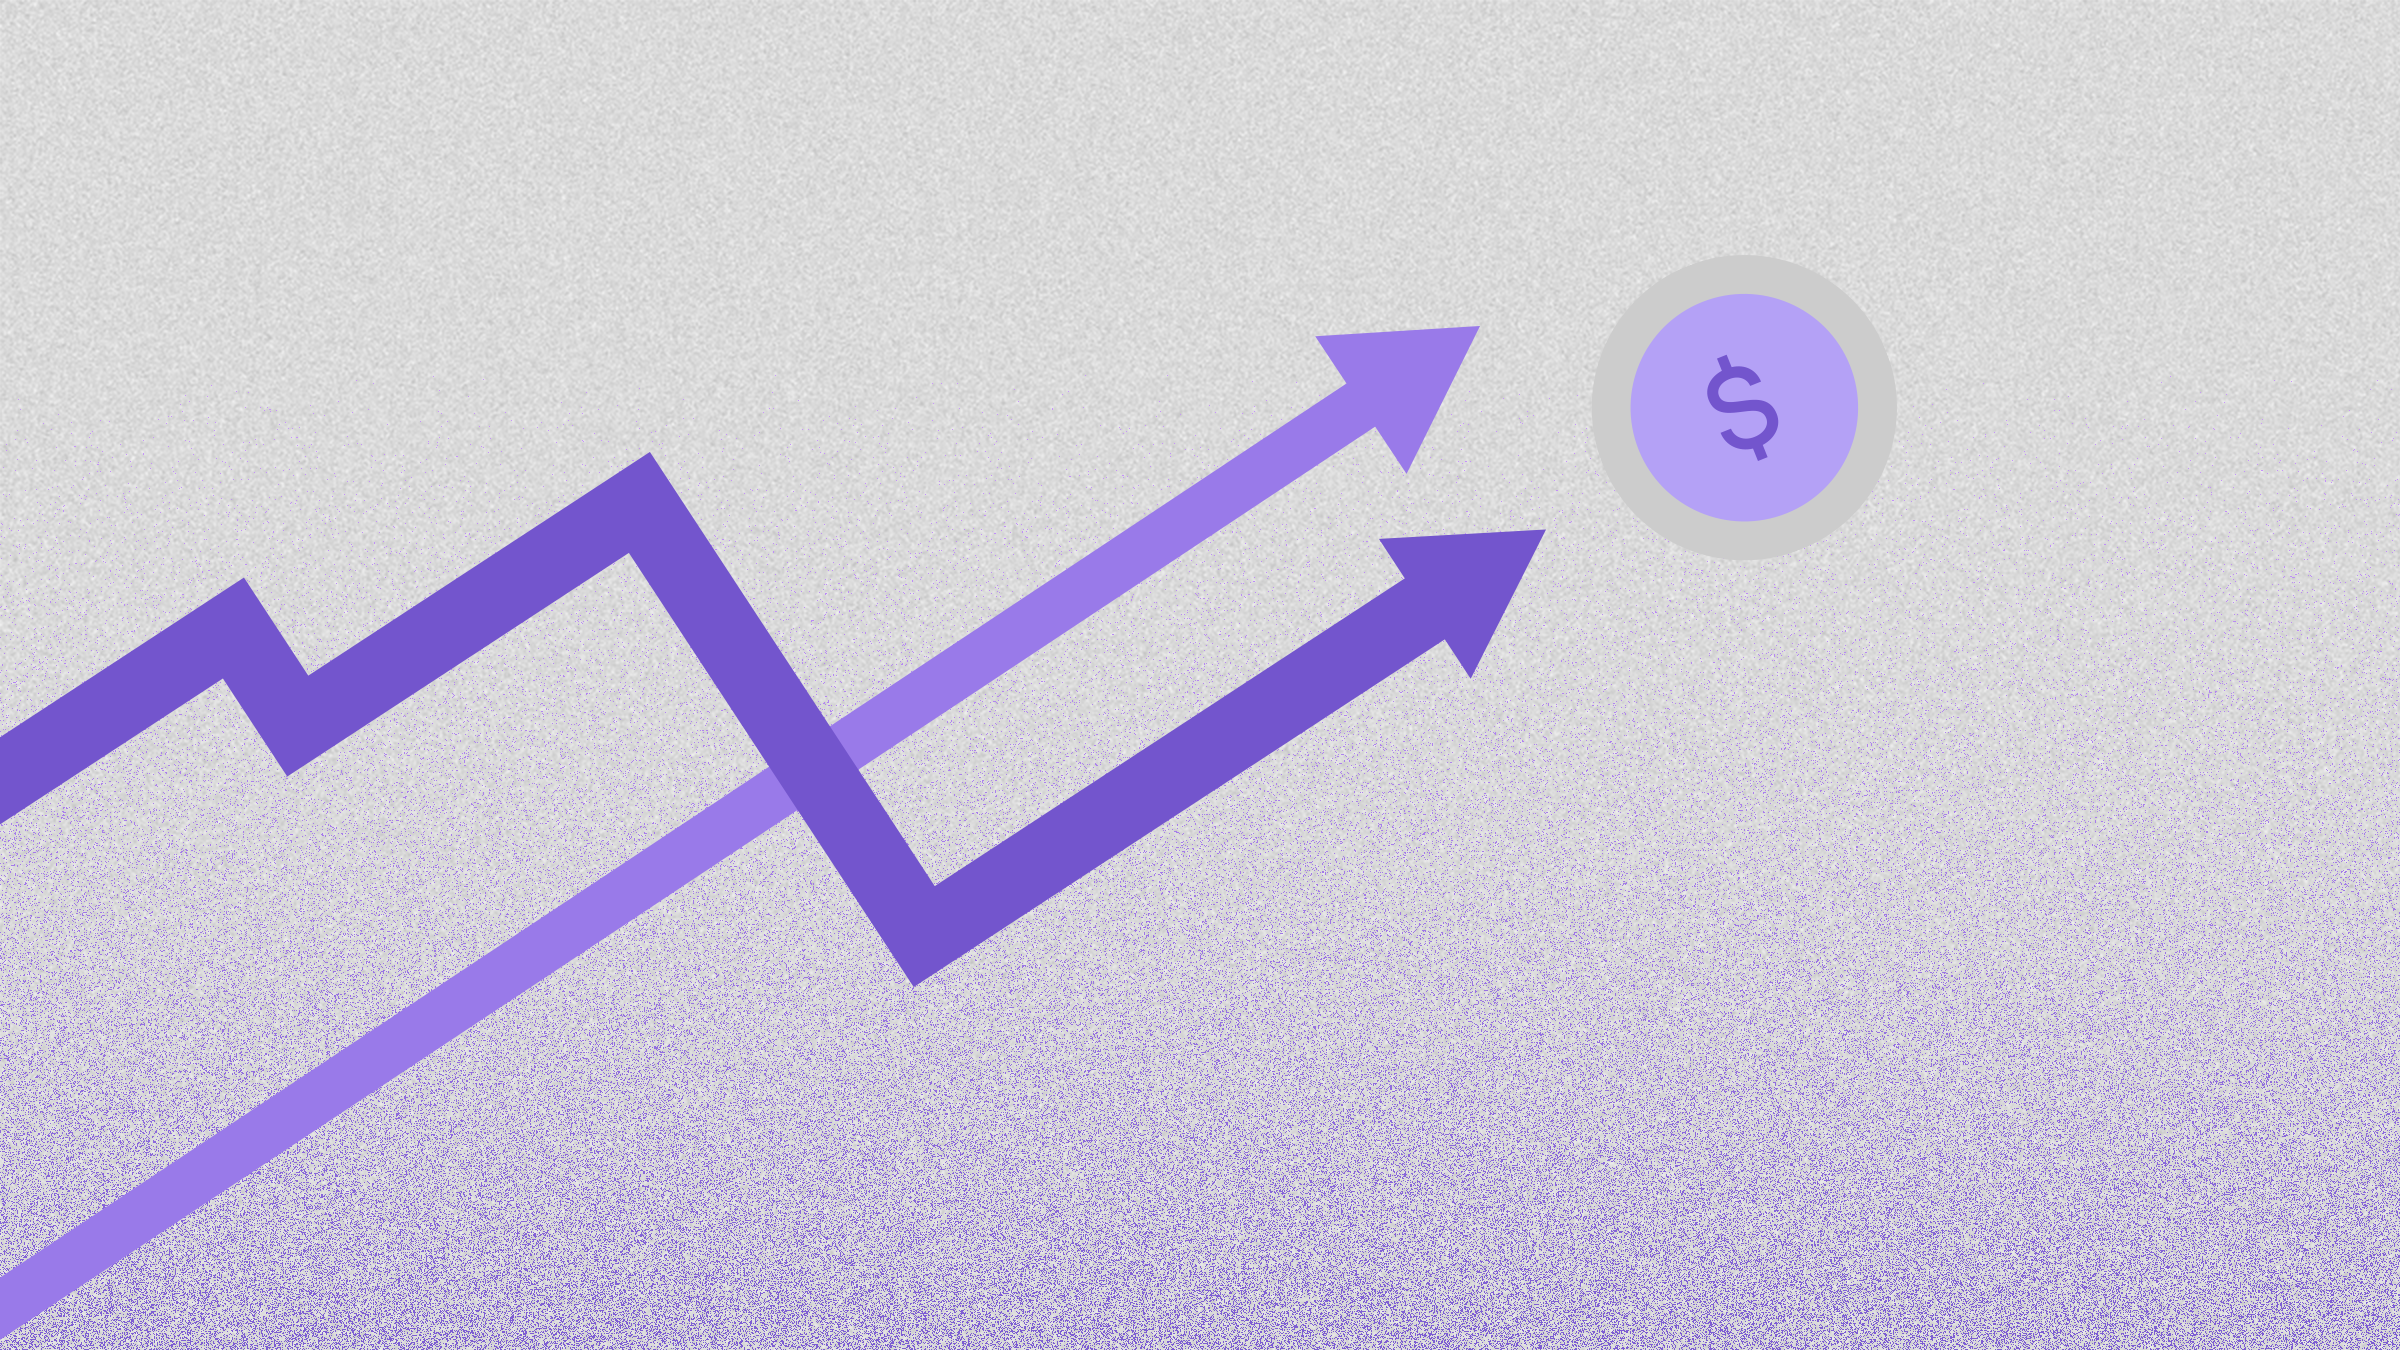 Dos flechas moradas en una gráfica lila apuntan hacia una moneda con signo de pesos que representa al interés compuesto